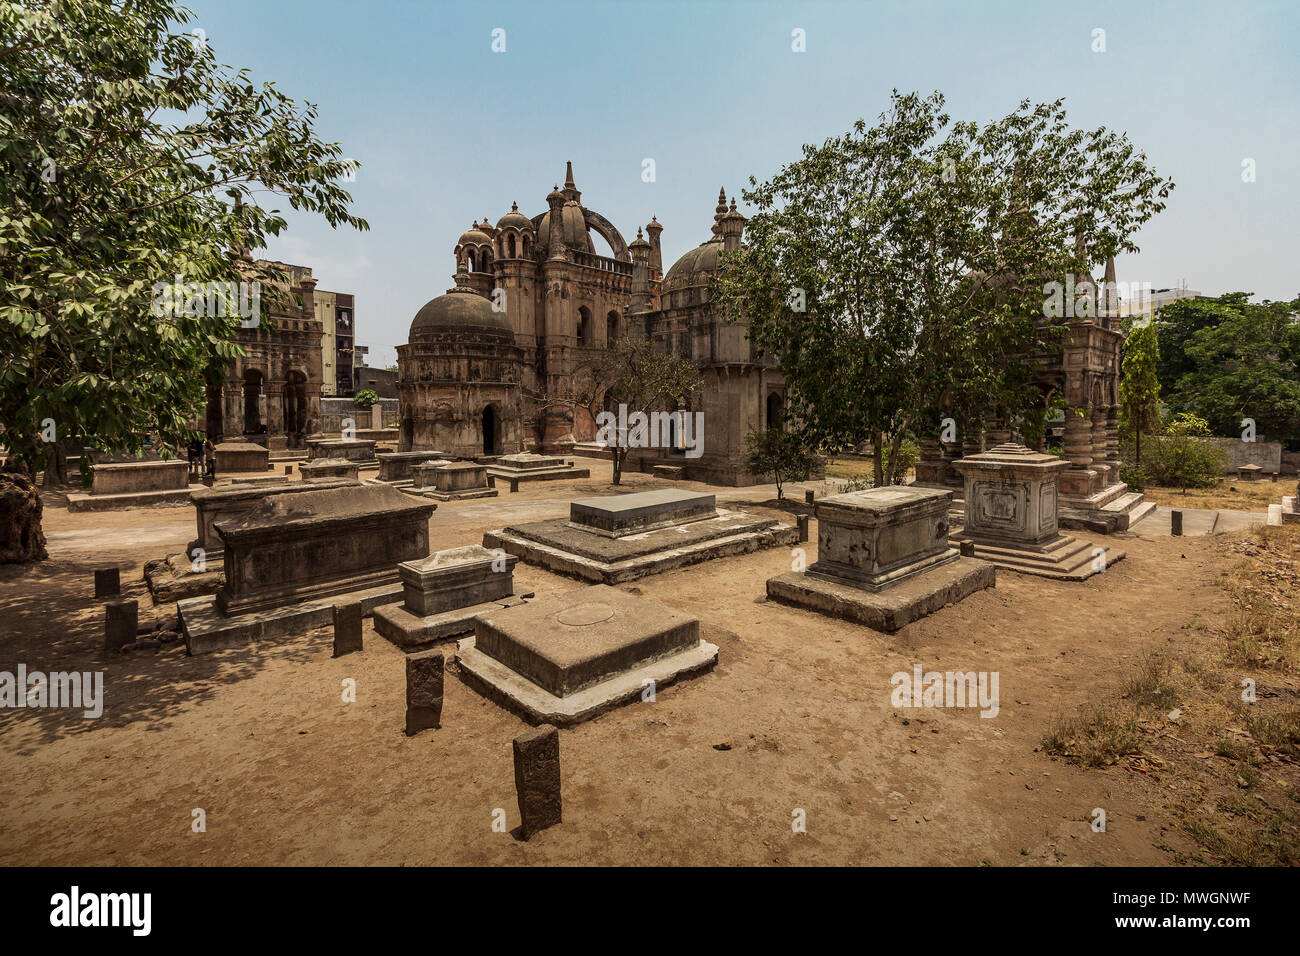 Il Cimitero olandese - l'olandese nonché i cimiteri armeno a Surat sono situati in una località nota come Gulam Falésia. Foto Stock